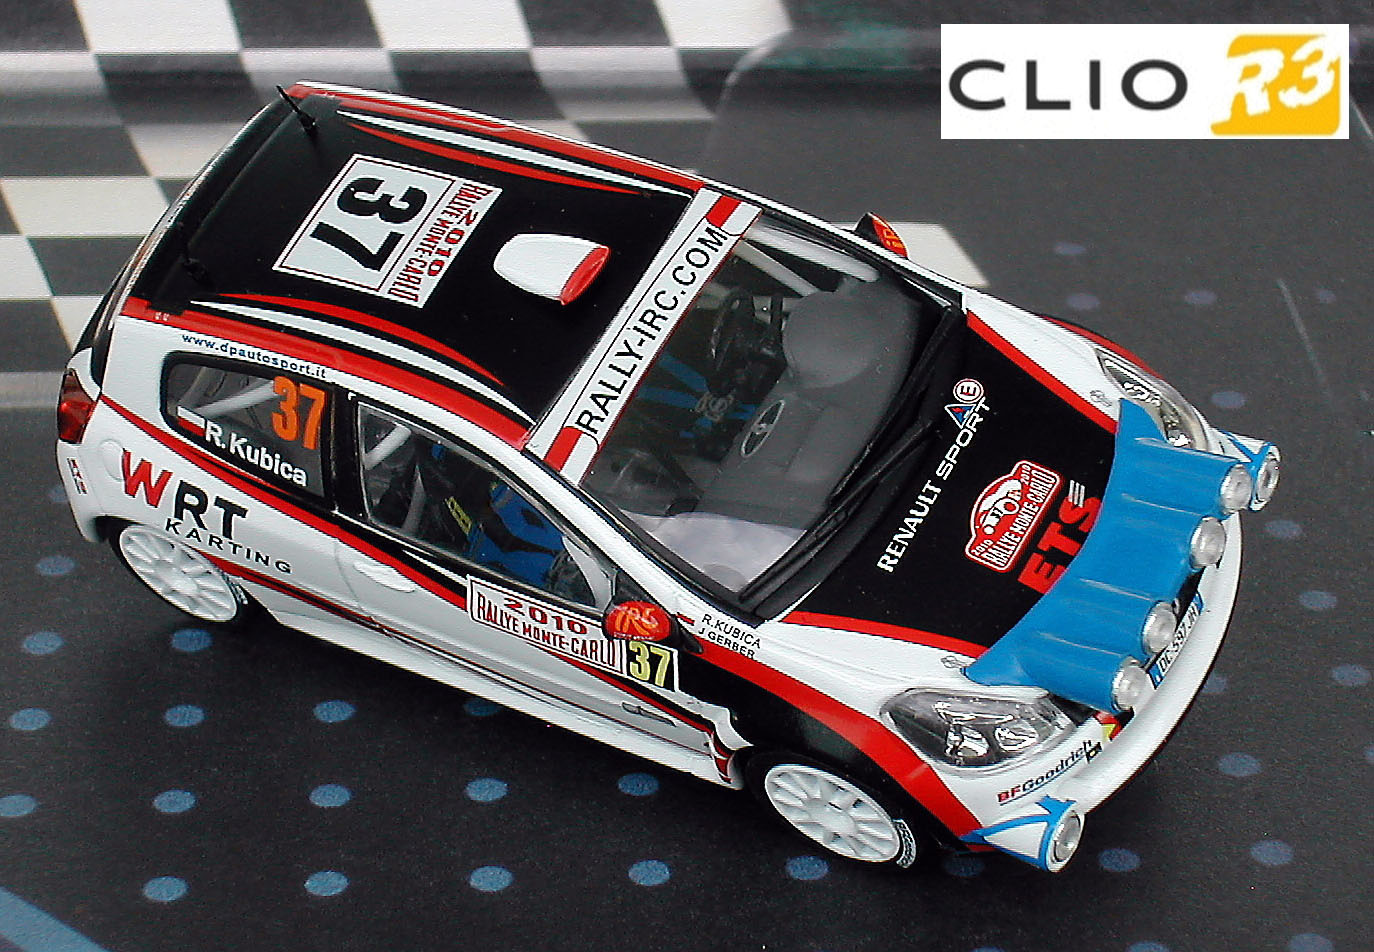 Clio R3